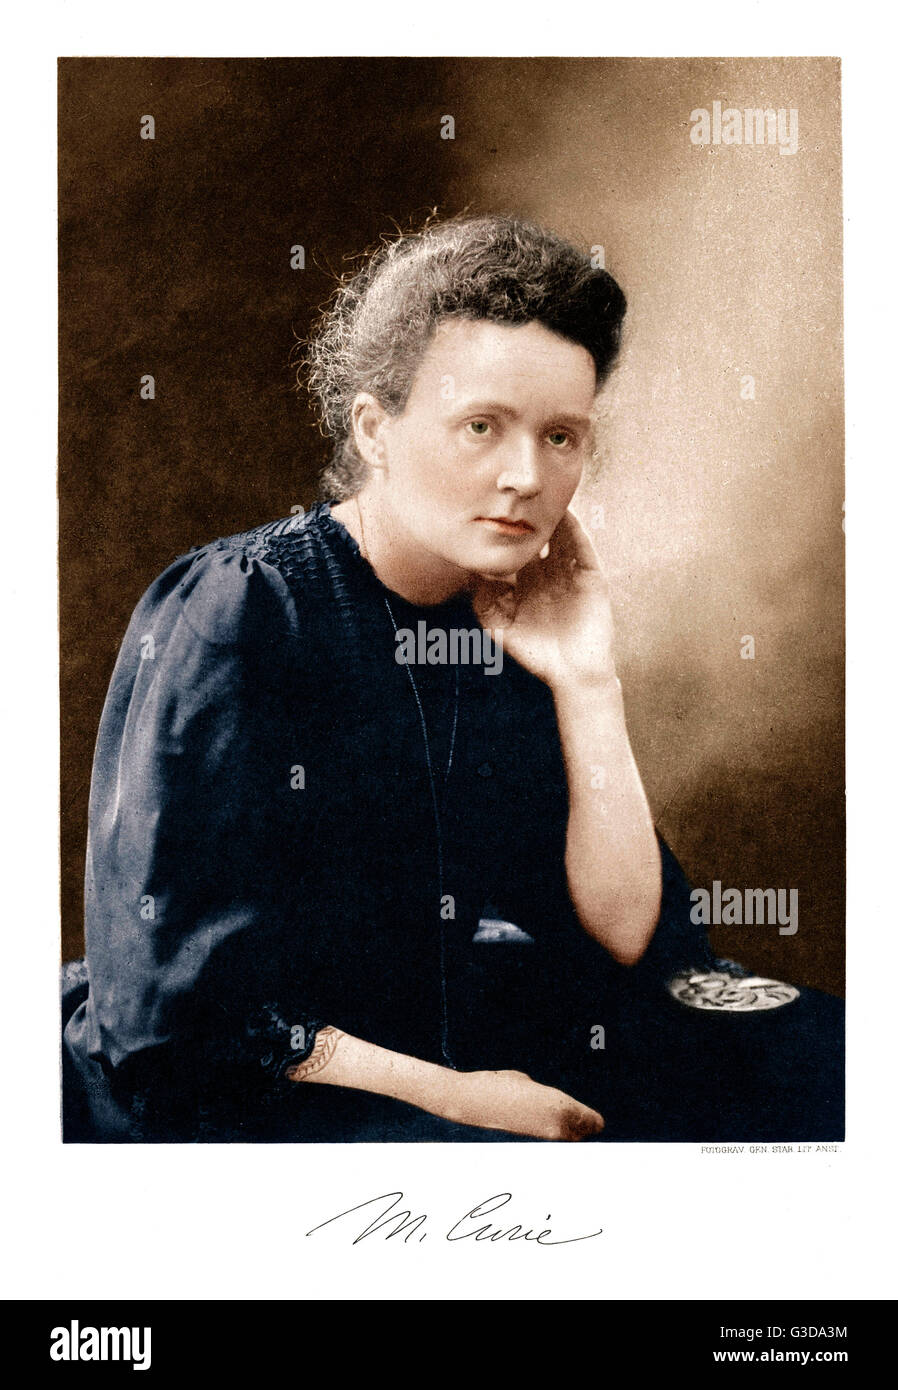 Marie Curie (1867-1934)-polnischer Wissenschaftler, zweimal der Empfänger des Nobelpreises für ihre bahnbrechende Forschung über Radioaktivität, die erste Frau Nobel Sieger.     Datum: 1911 Stockfoto